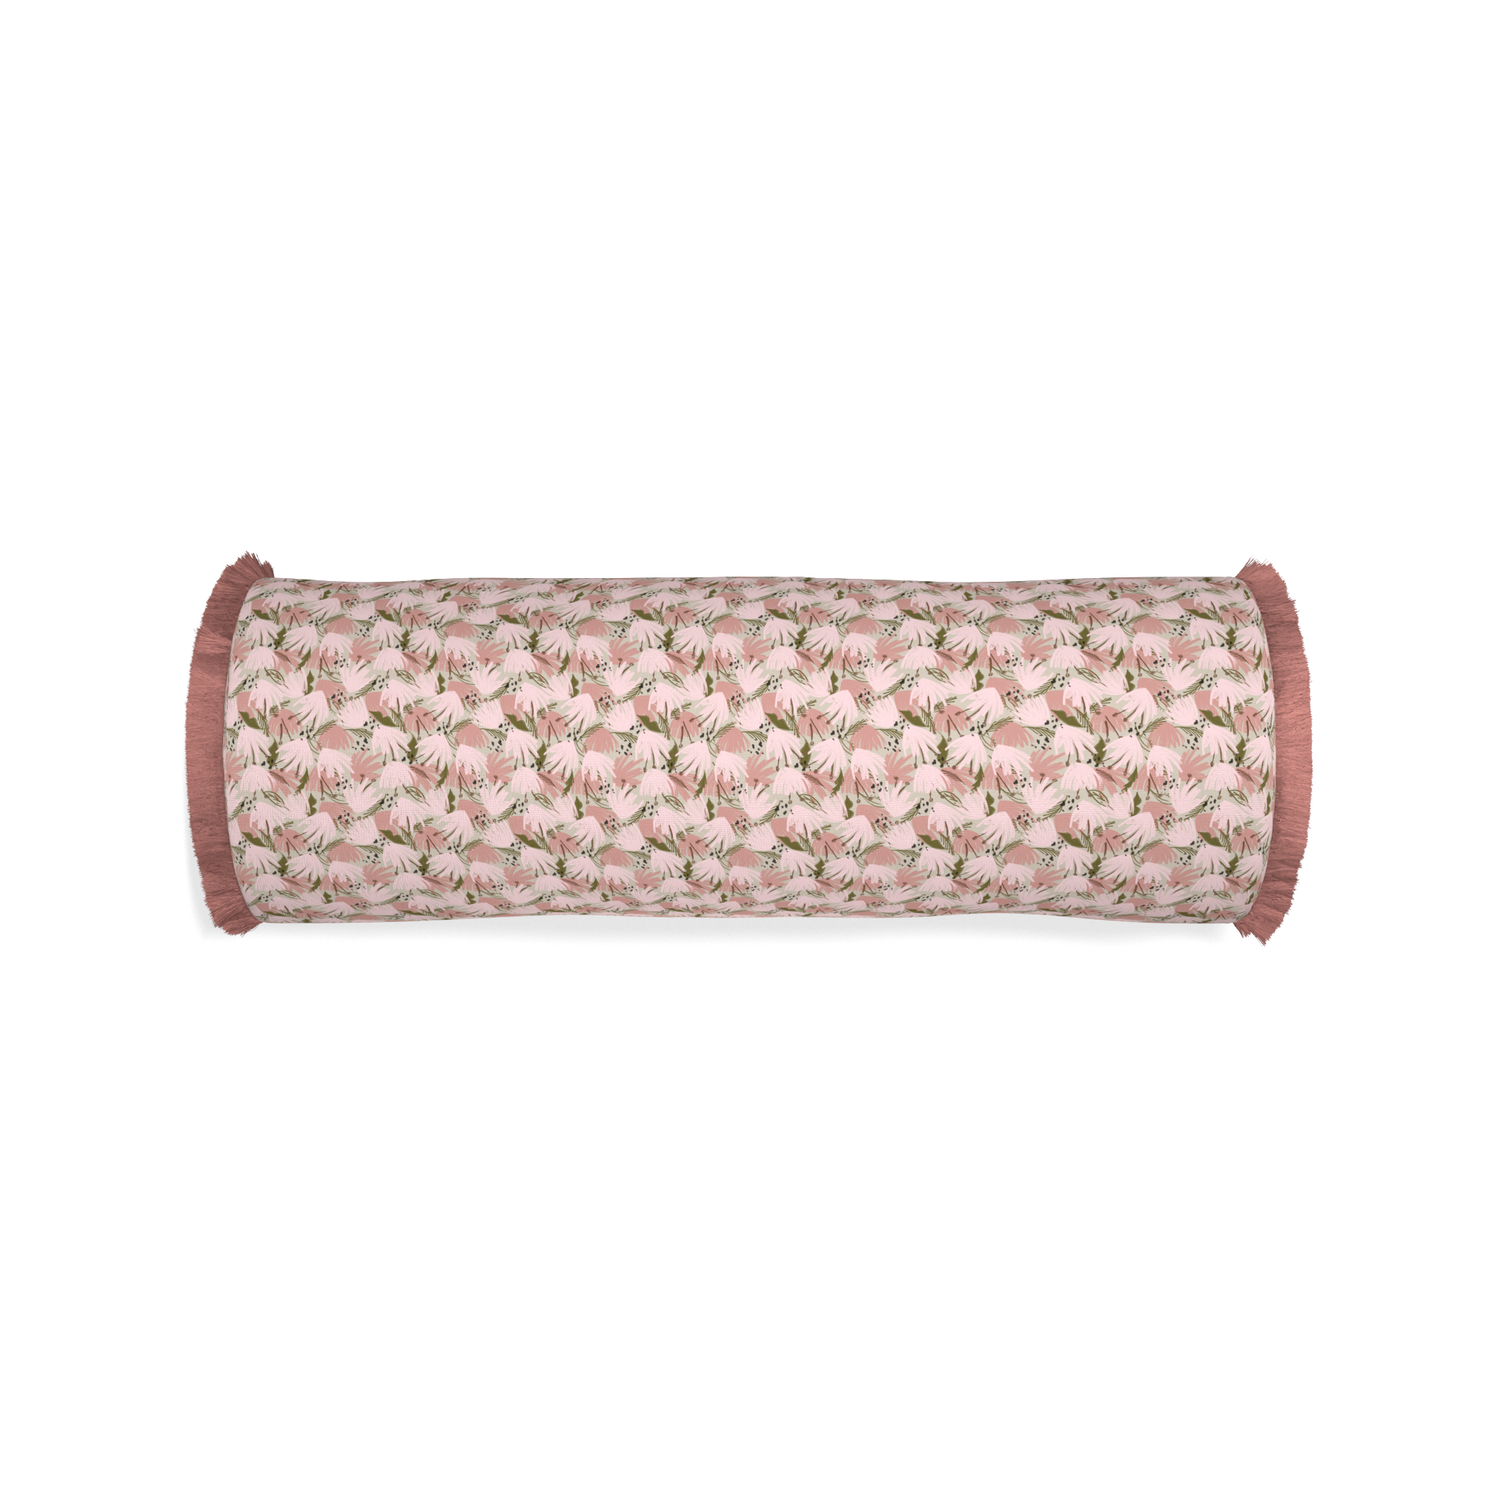 Bolster eden pink custom pillow with d fringe on white background